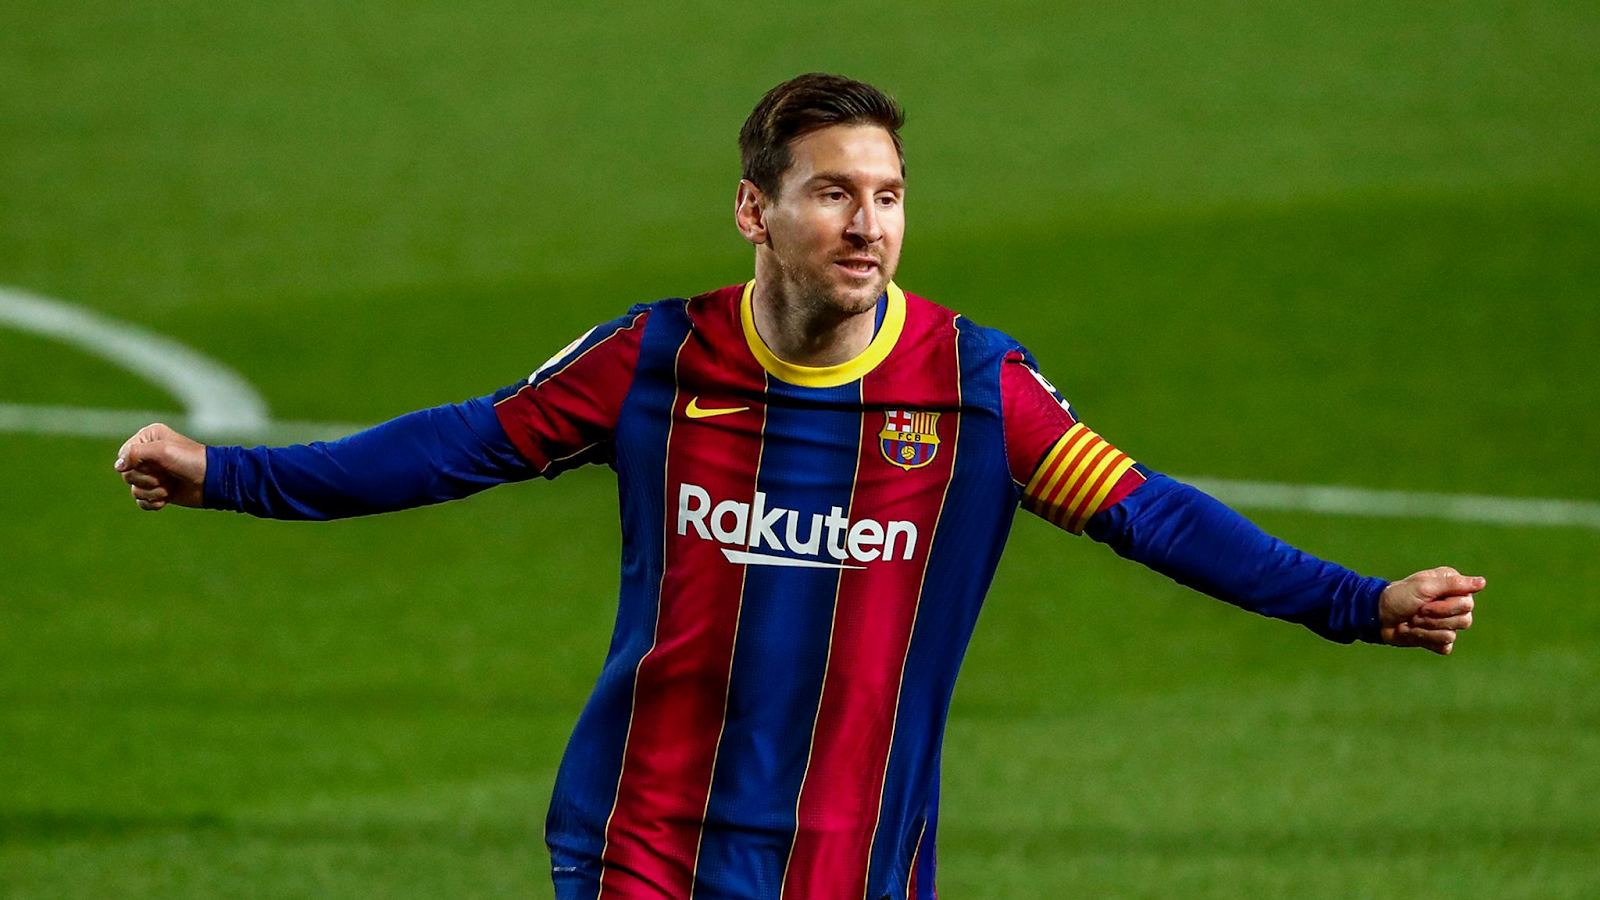  Tìm hiểu chung về ngôi sao bóng đá Lionel Messi